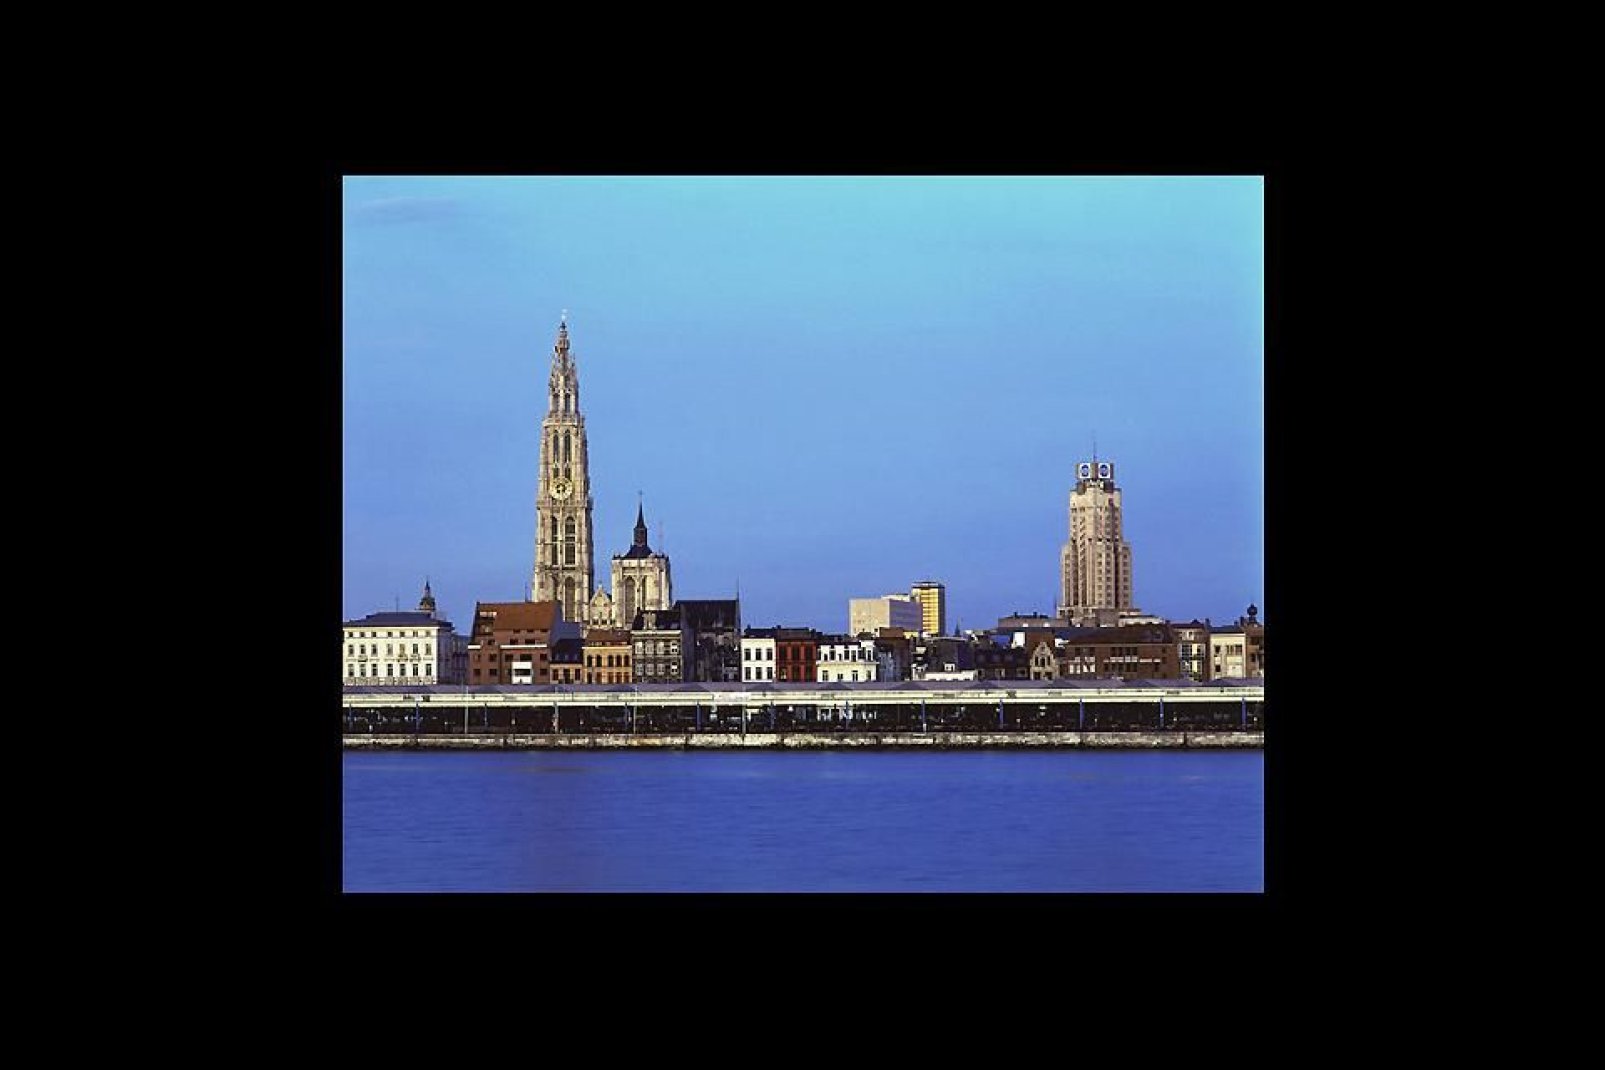 Anvers est le premier port belge et le deuxième port européen. Il est possible d'effectuer une visite du port afin de découvrir les entrepôts, terminaux et containers.